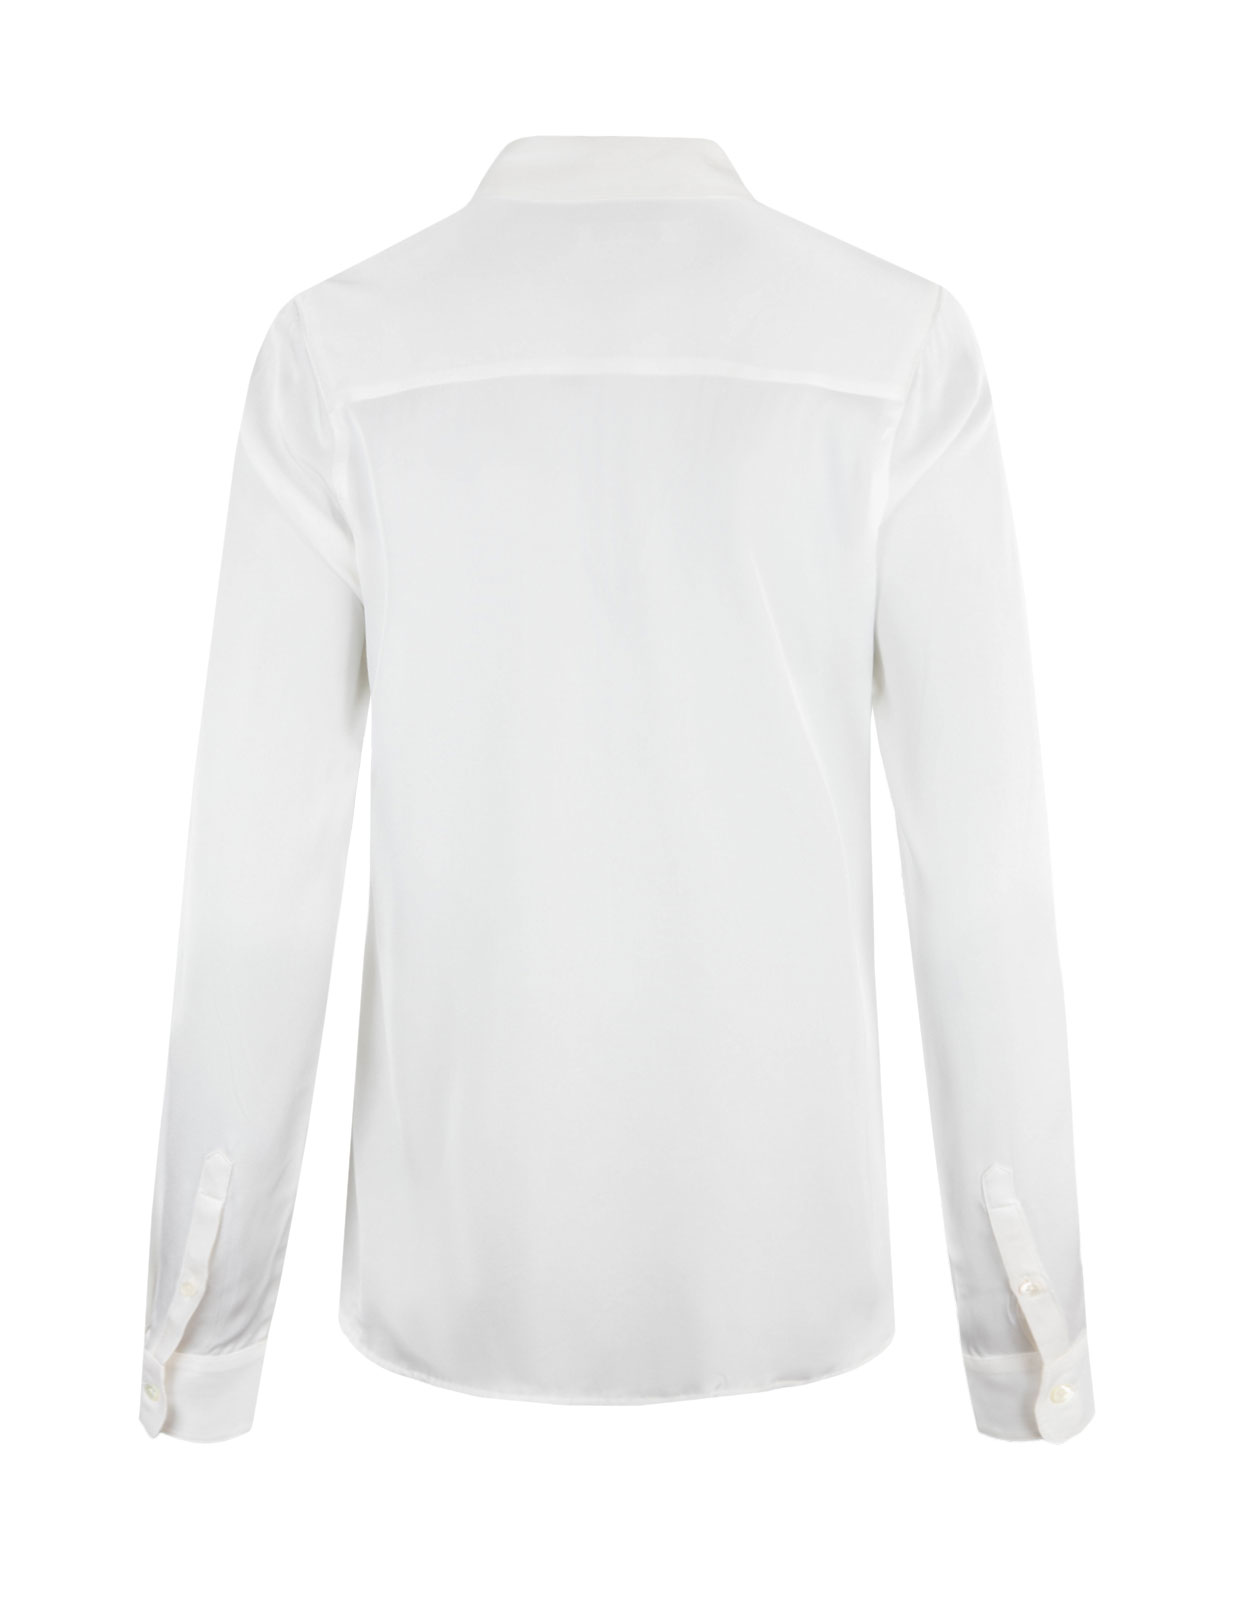 Susan Silk Shirt Offwhite Stl 38